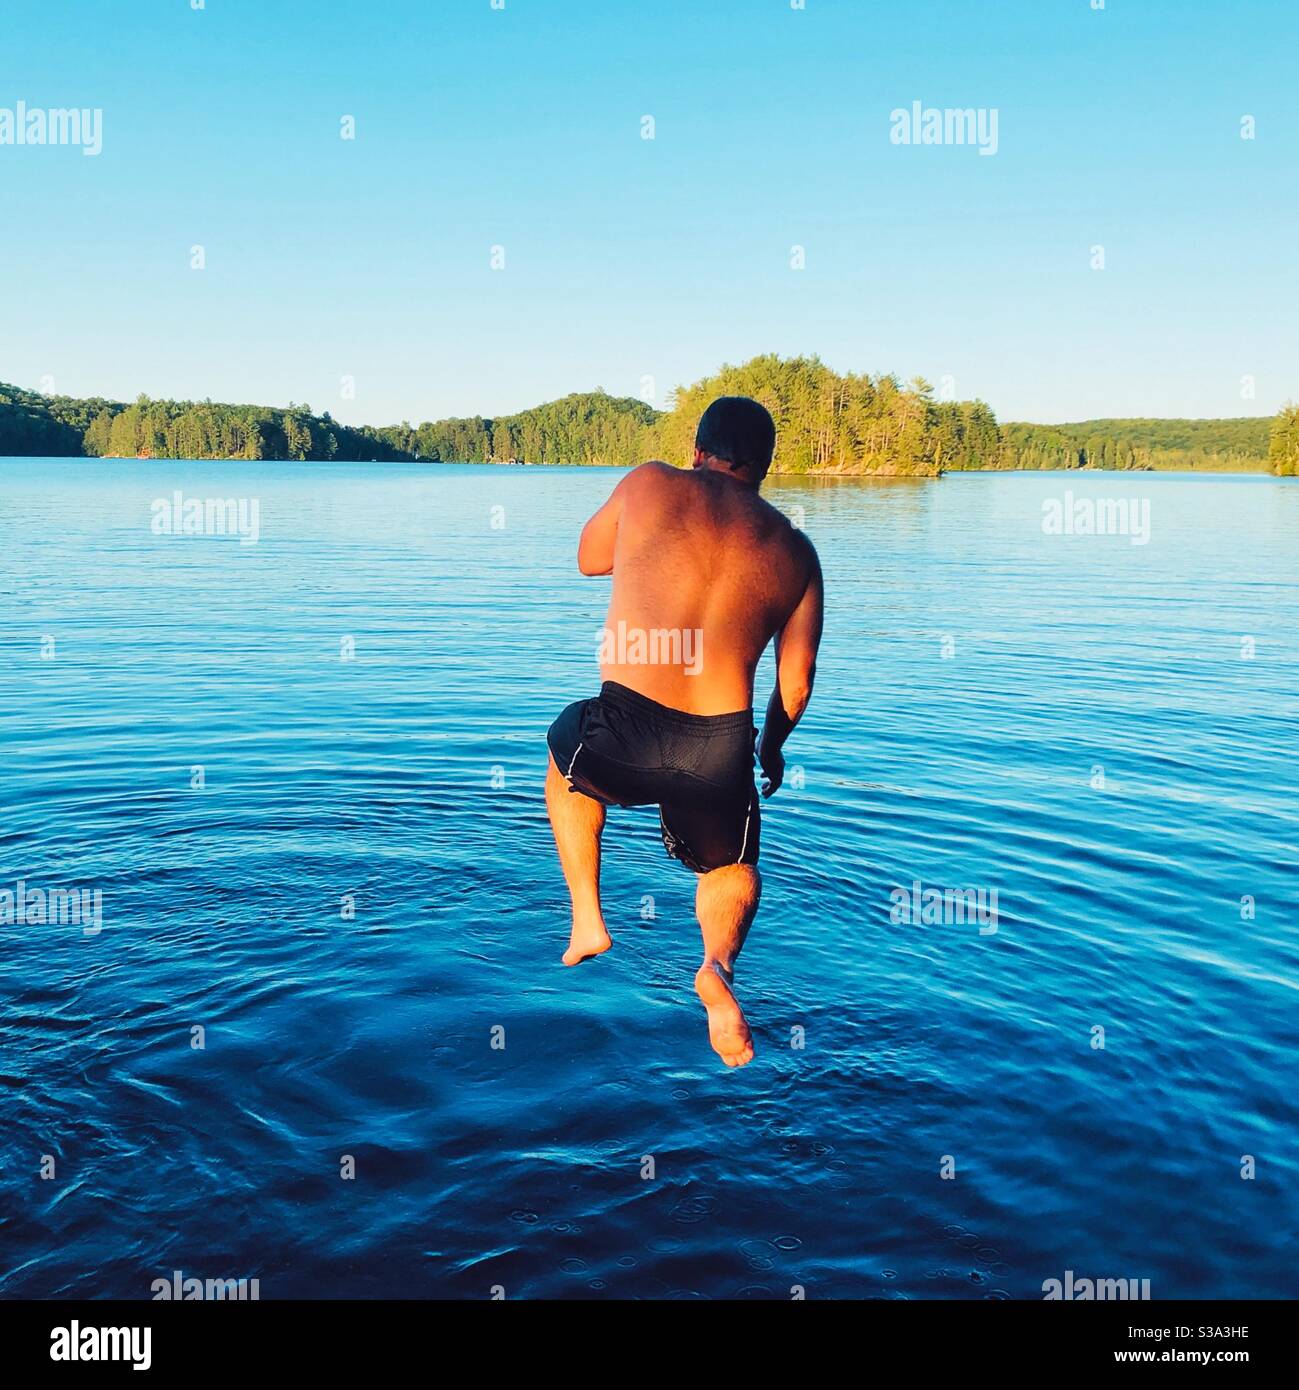 Man jumping into lake Stock Photo